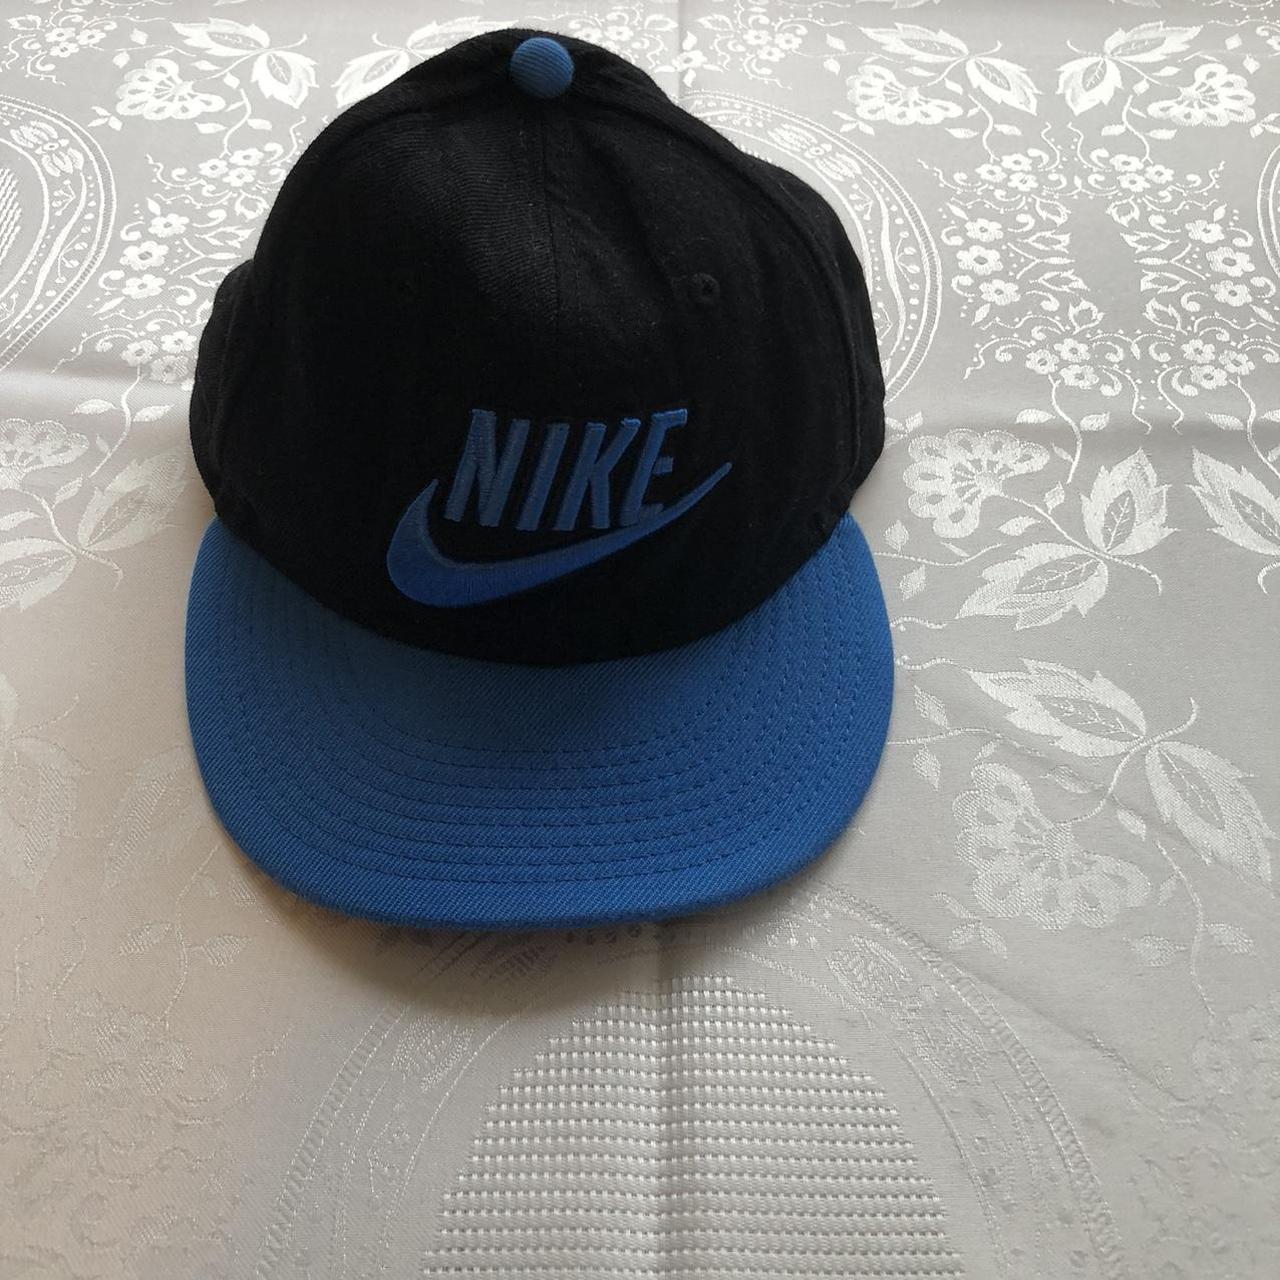 Product Image 1 - Nike Men’s Black/Blue Vintage Hat